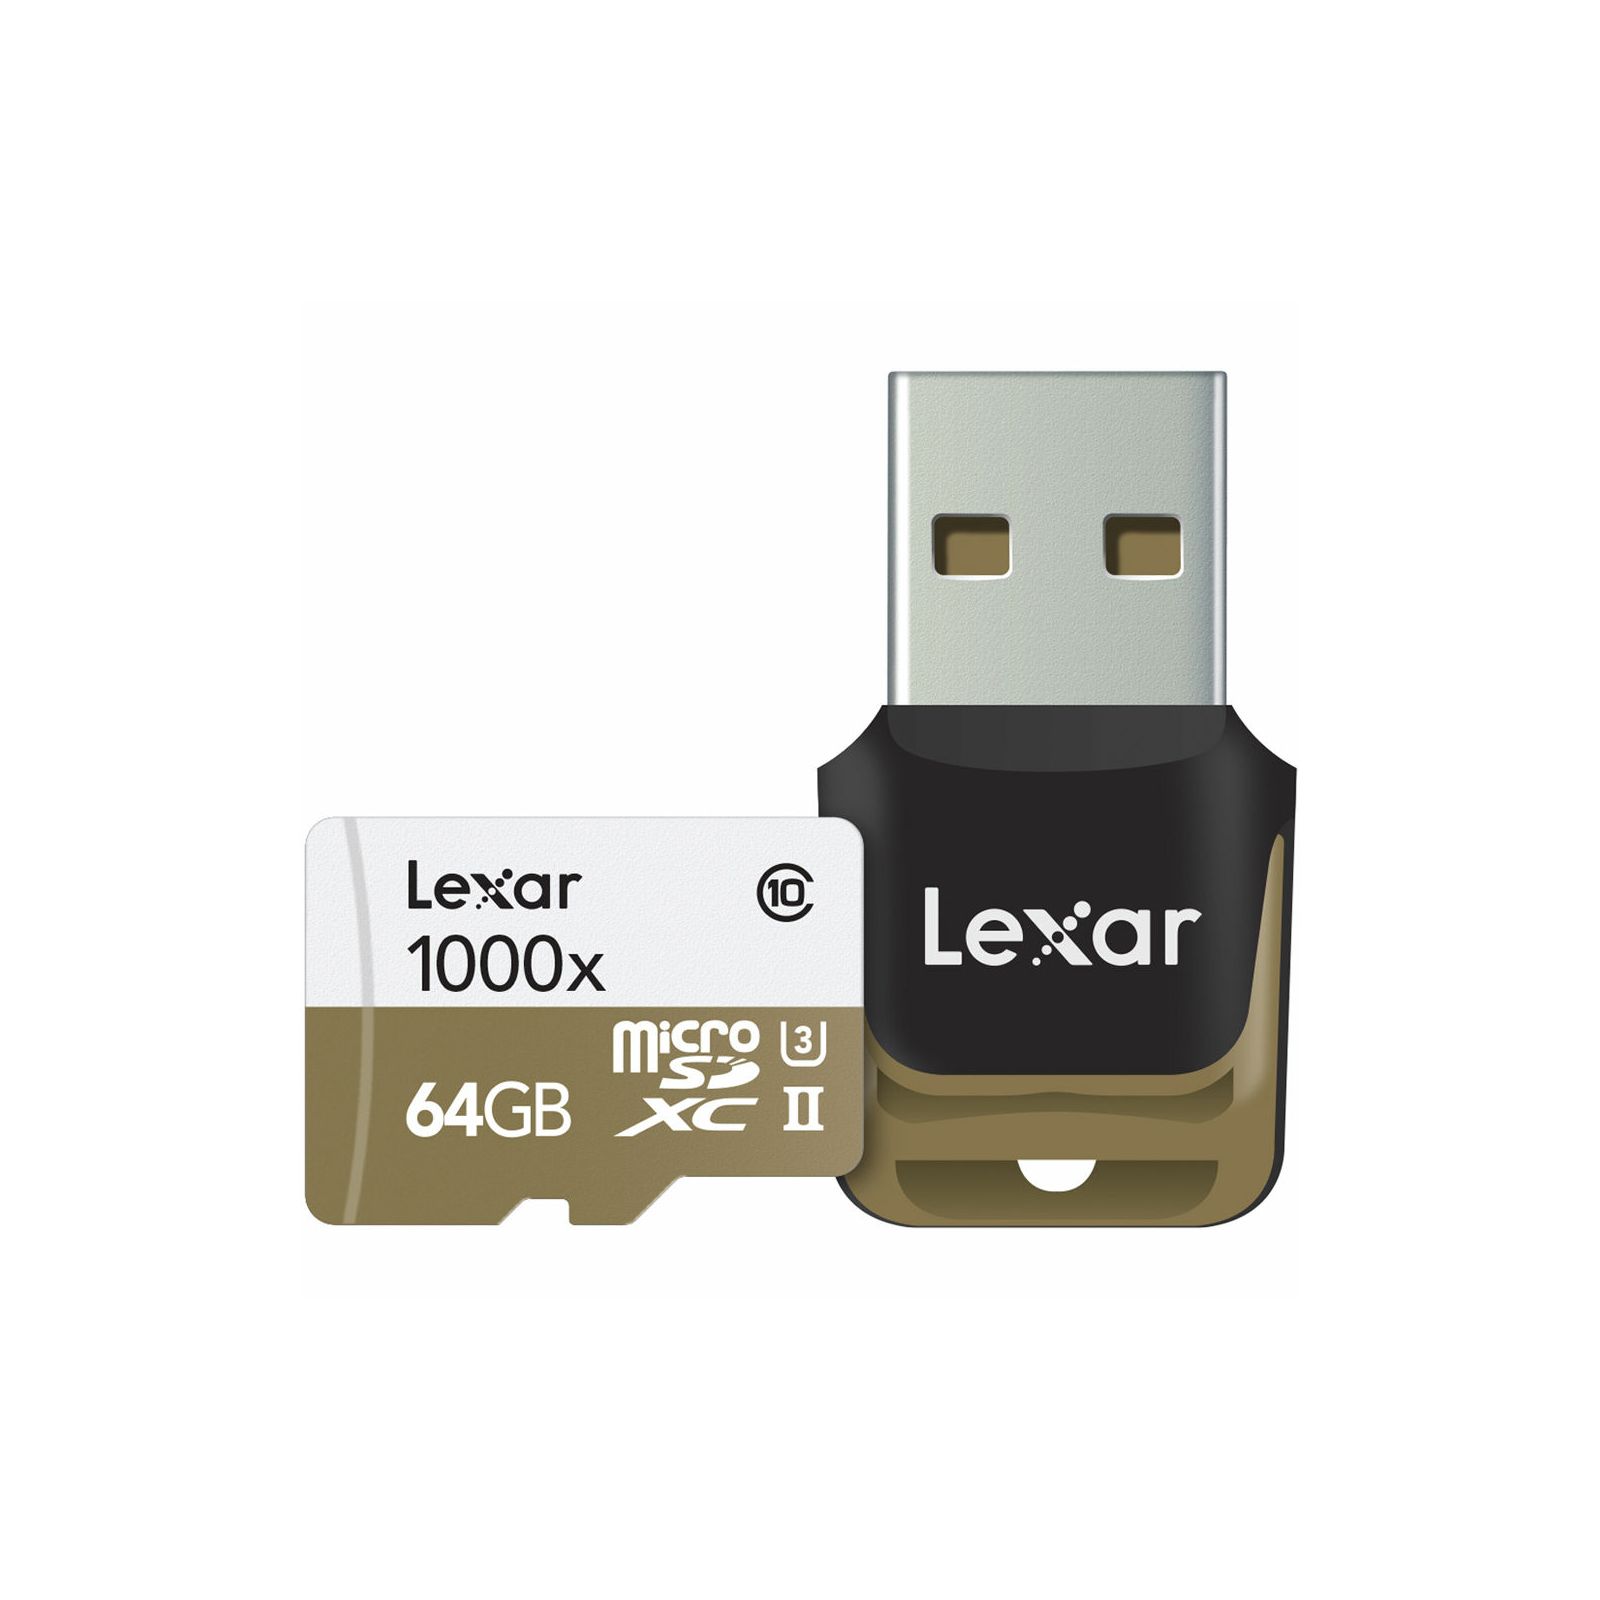 Lexar microSDXC 64GB 1000x 150mb/s UHS-II with USB 3.0 Reader microSD memorijska kartica + USB čitač LSDMI64GCBEU1000R